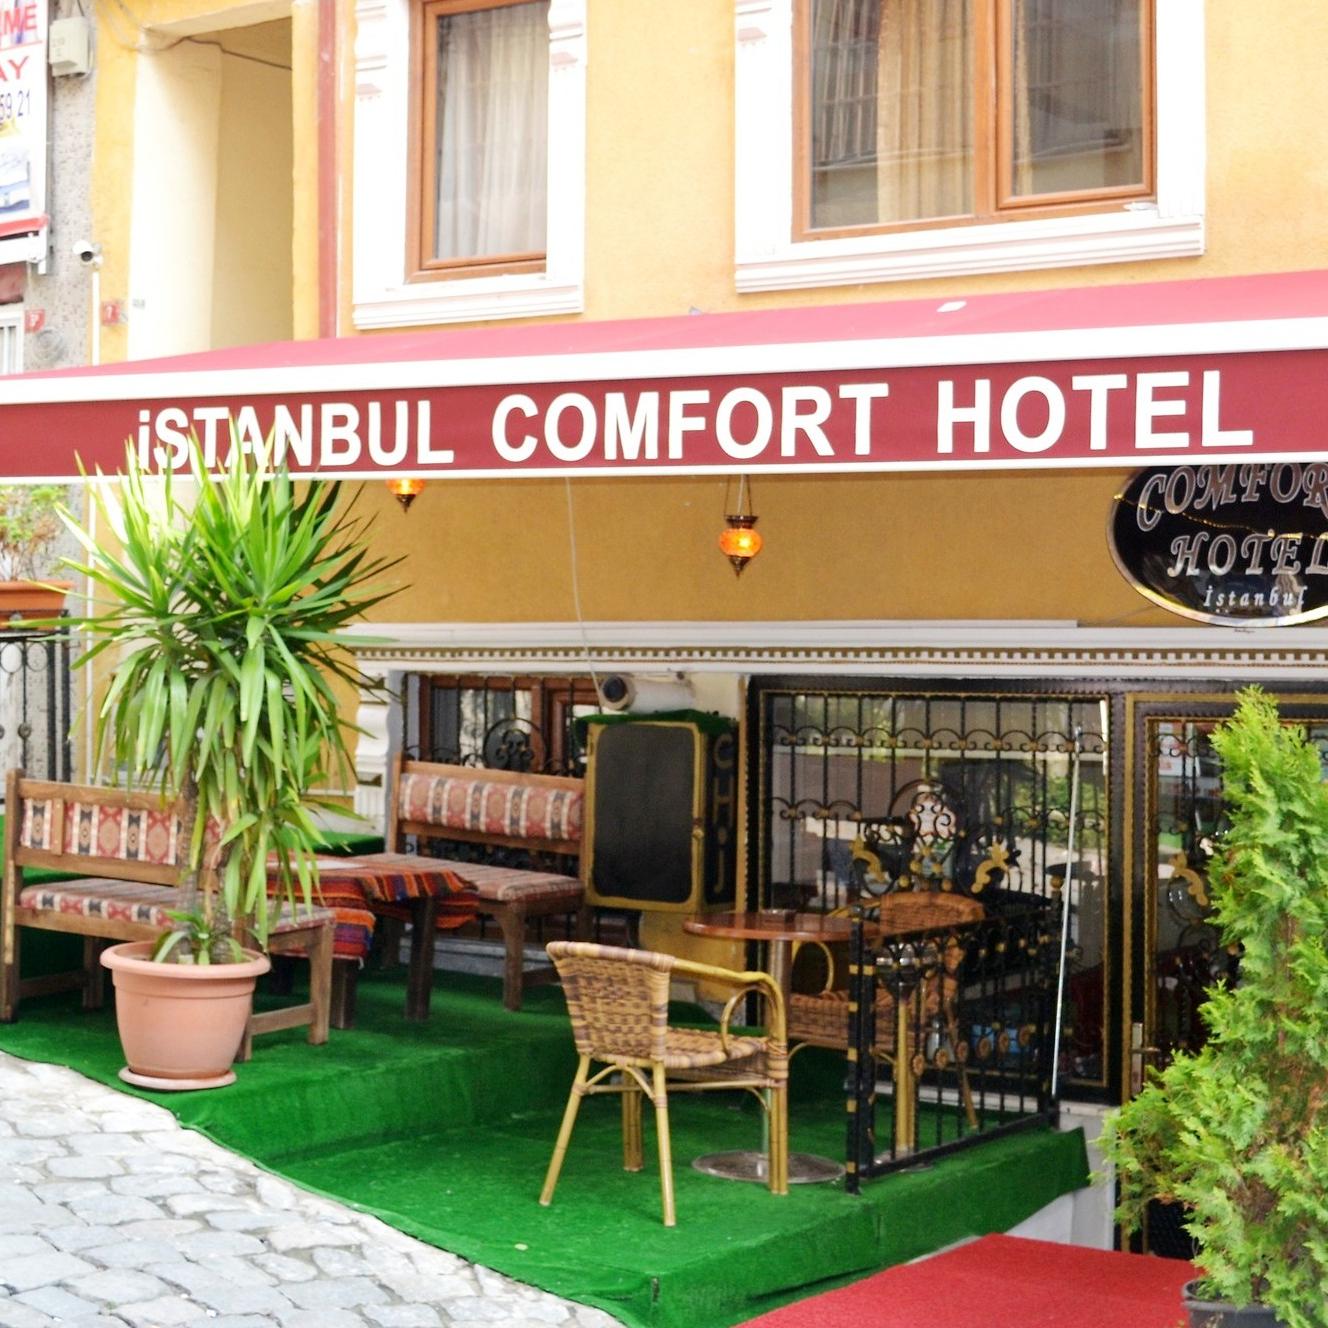 Istanbul Comfort Hotel fairmont quasar istanbul hotel